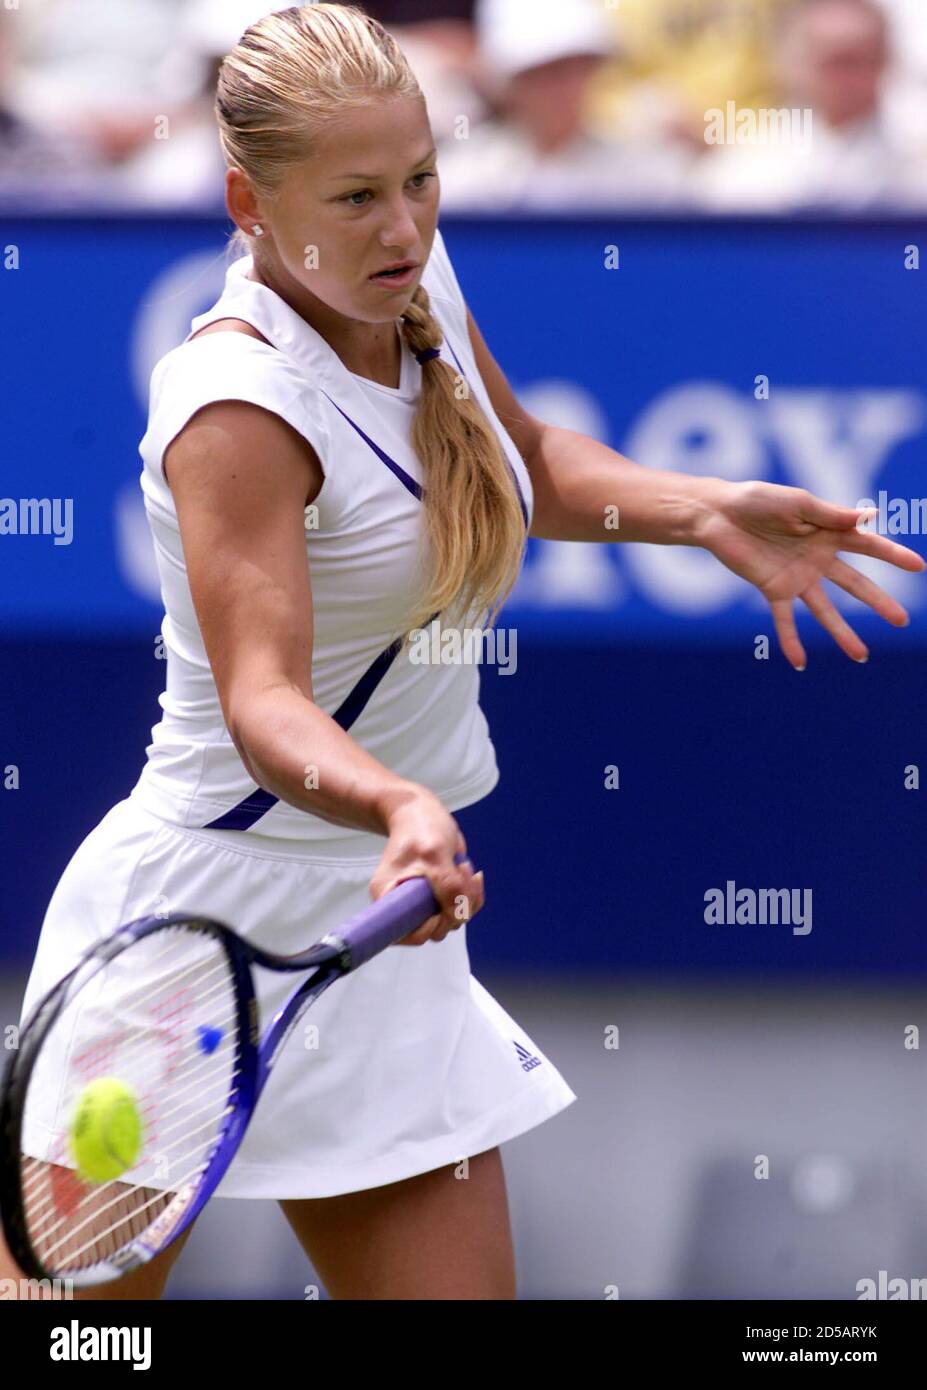 Joueur de tennis russe et numéro mondial 14 Anna Kournikova joue un front  lors de son match contre Natasha Zvereva du Bélarus au Championnat  international de tennis féminin à Eastbourne, le 21